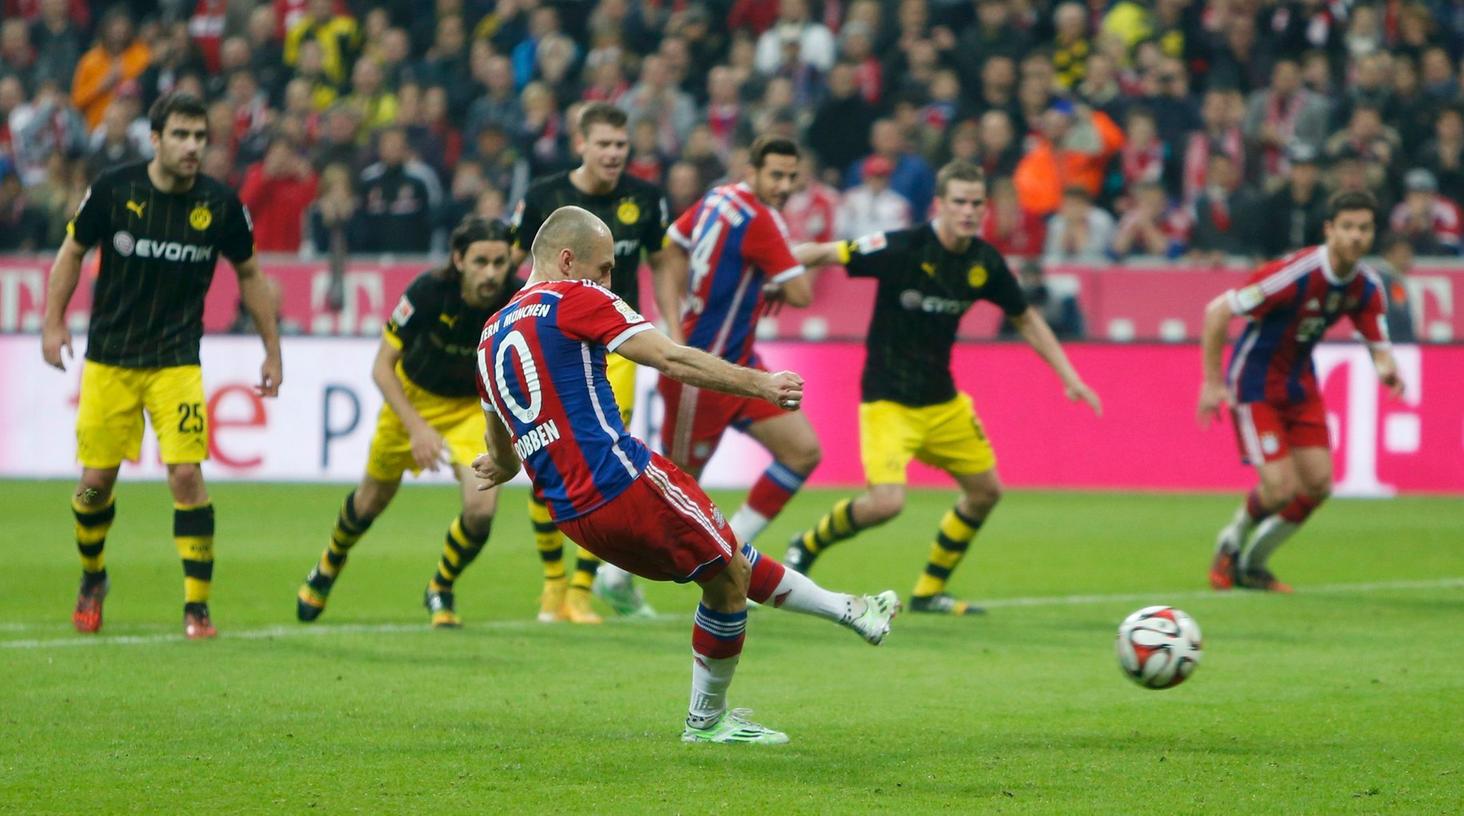 Schuss ins Glück: Vom Punkt behielt Arjen Robben die Nerven, erzielte das entscheidende 2:1 für die Münchner.